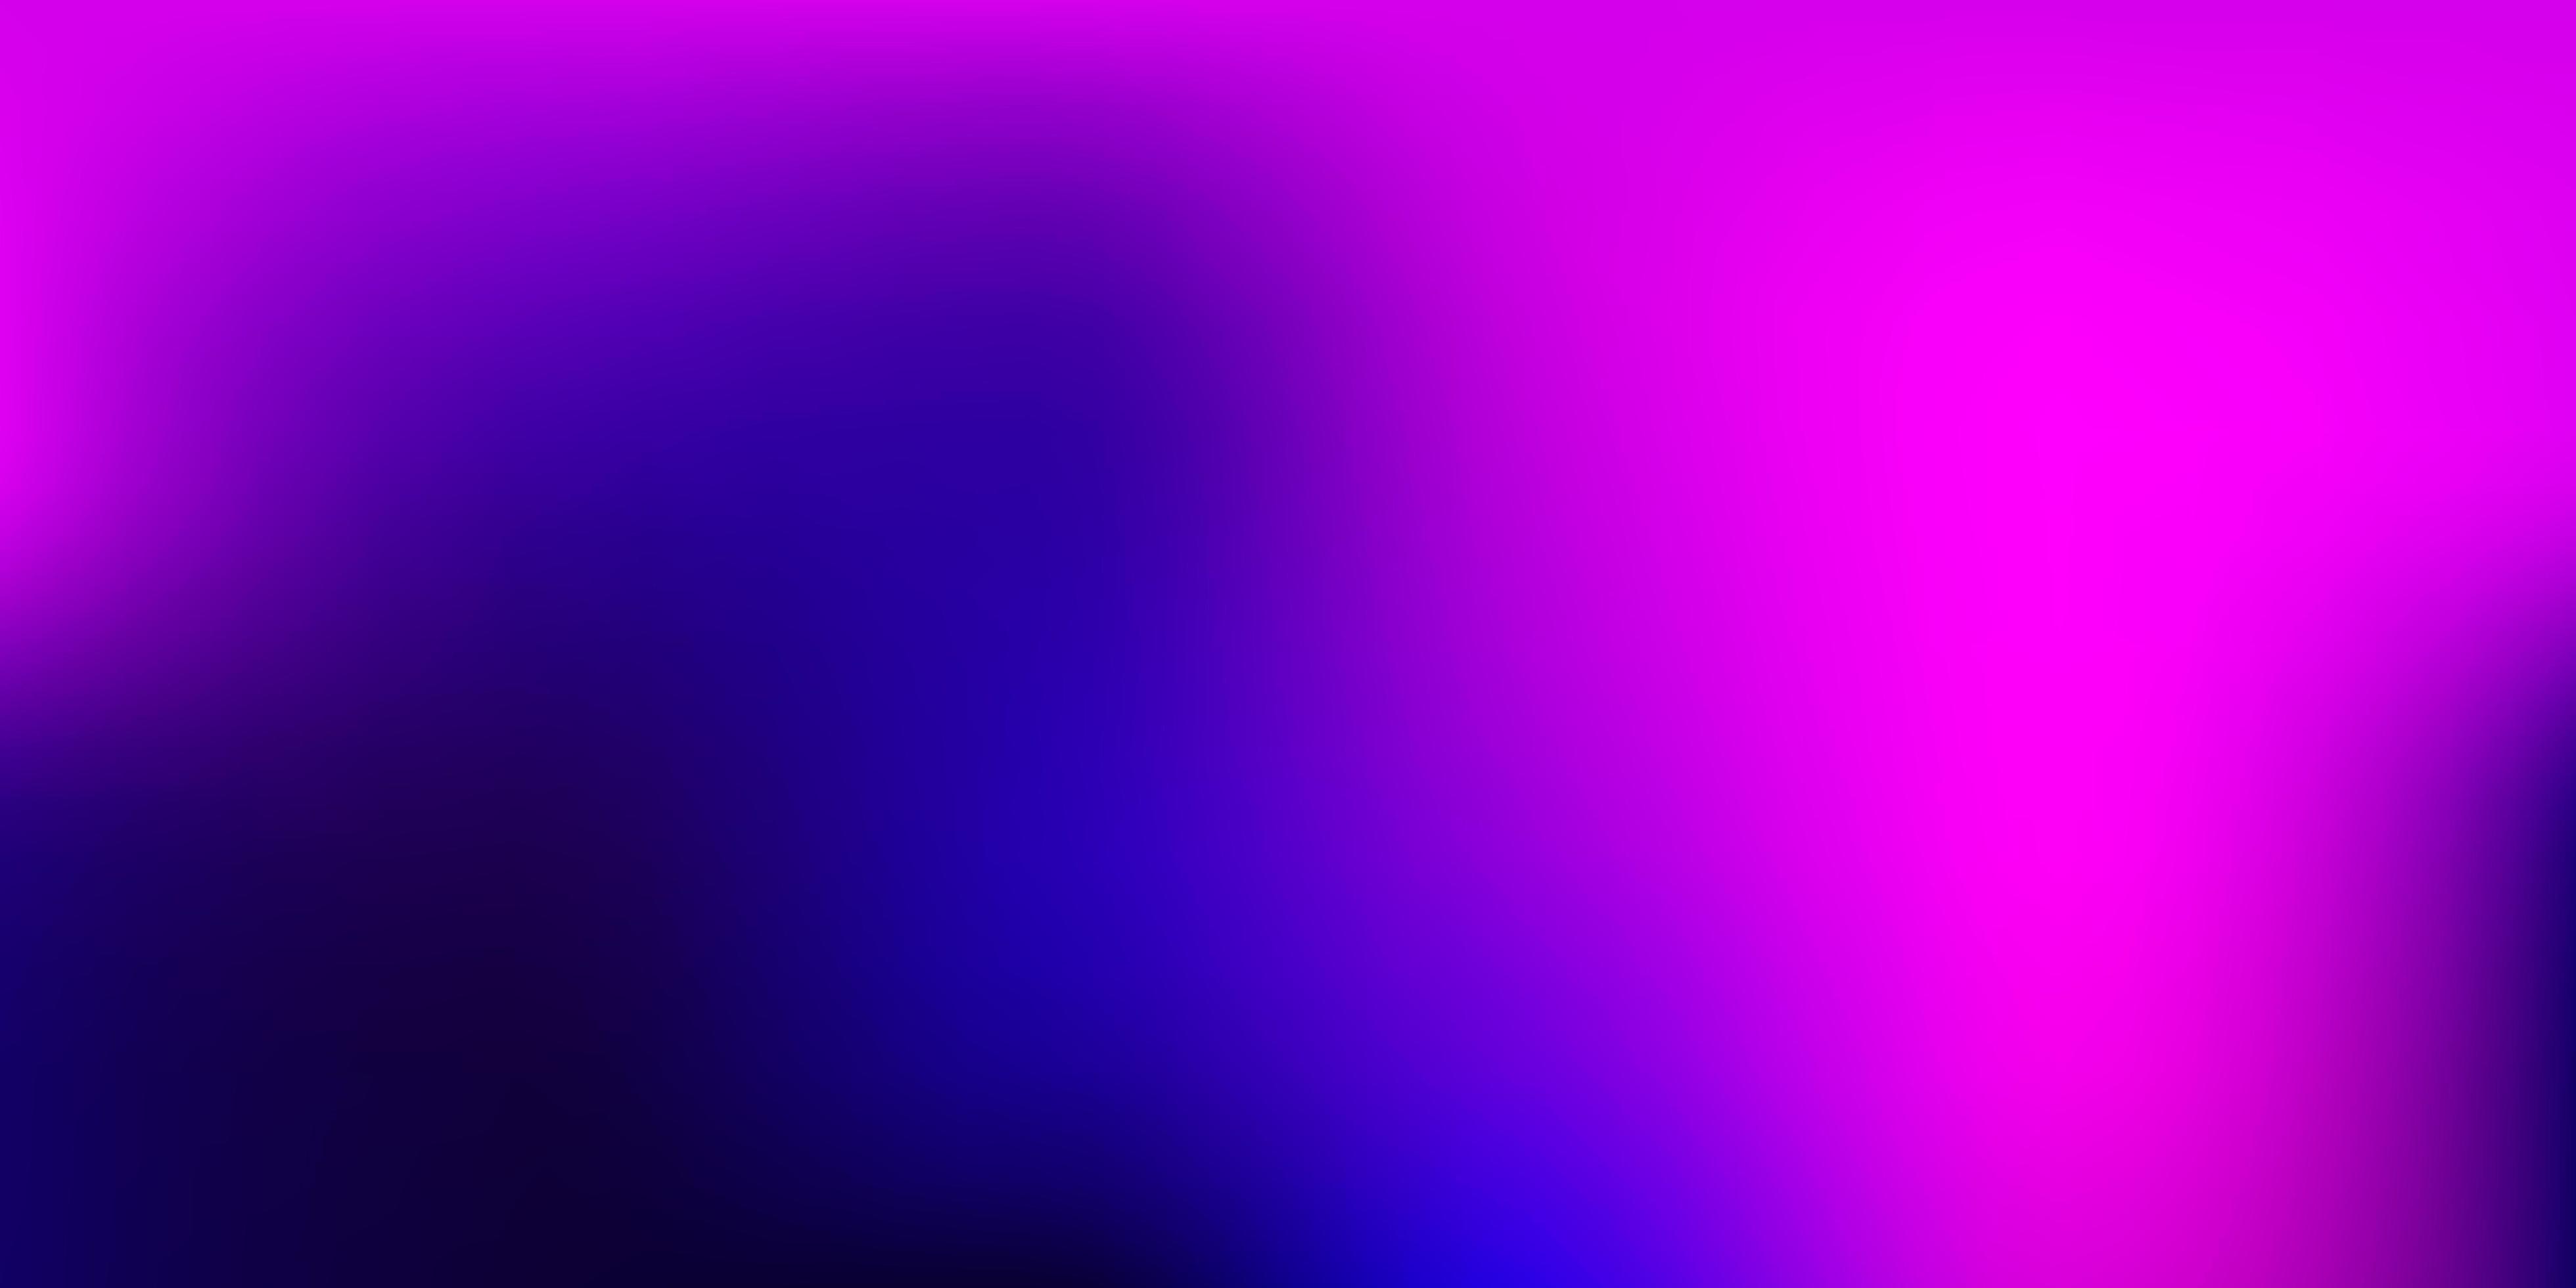 Dark Purple vector gradient blur pattern. 2735295 Vector Art at Vecteezy